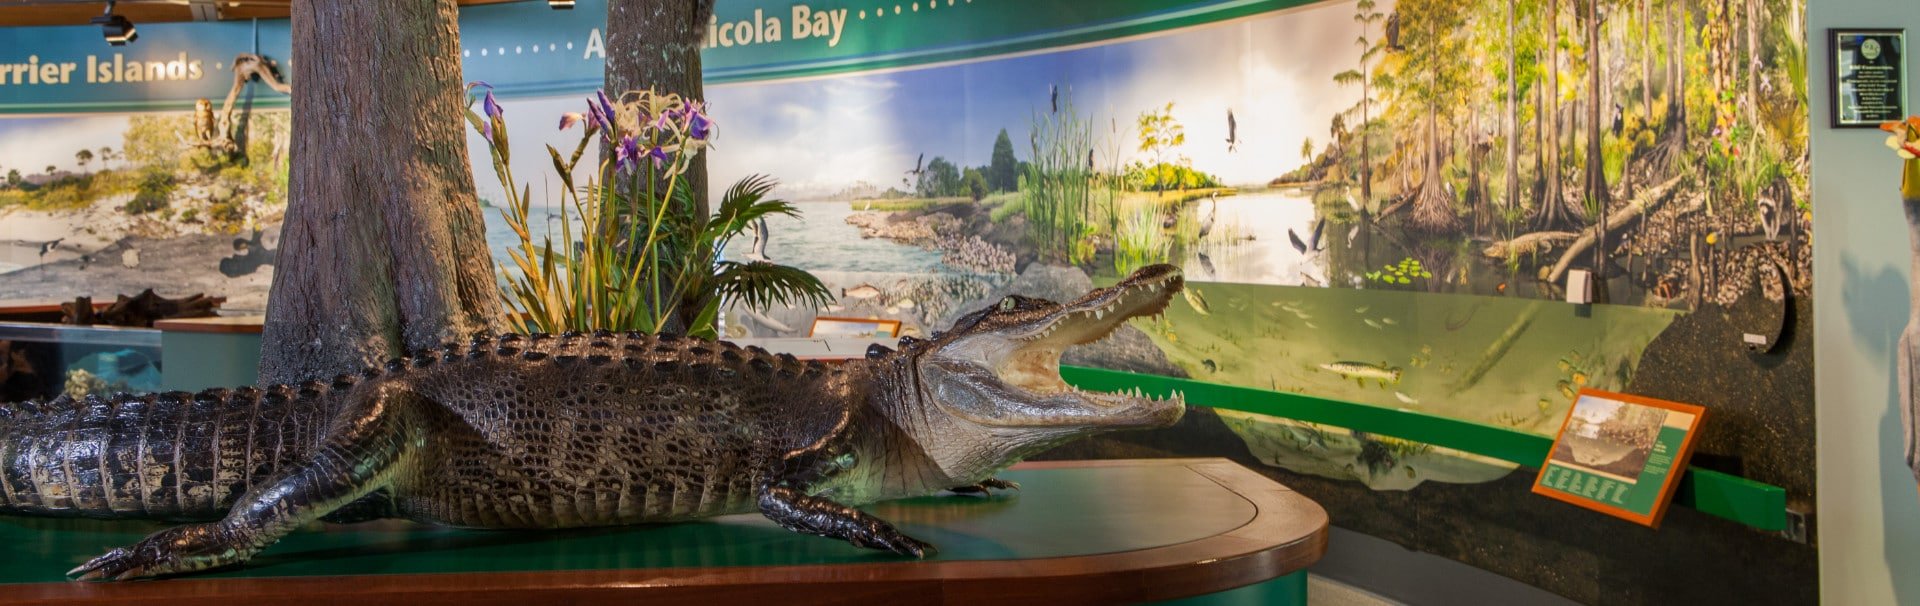 Alligator on display